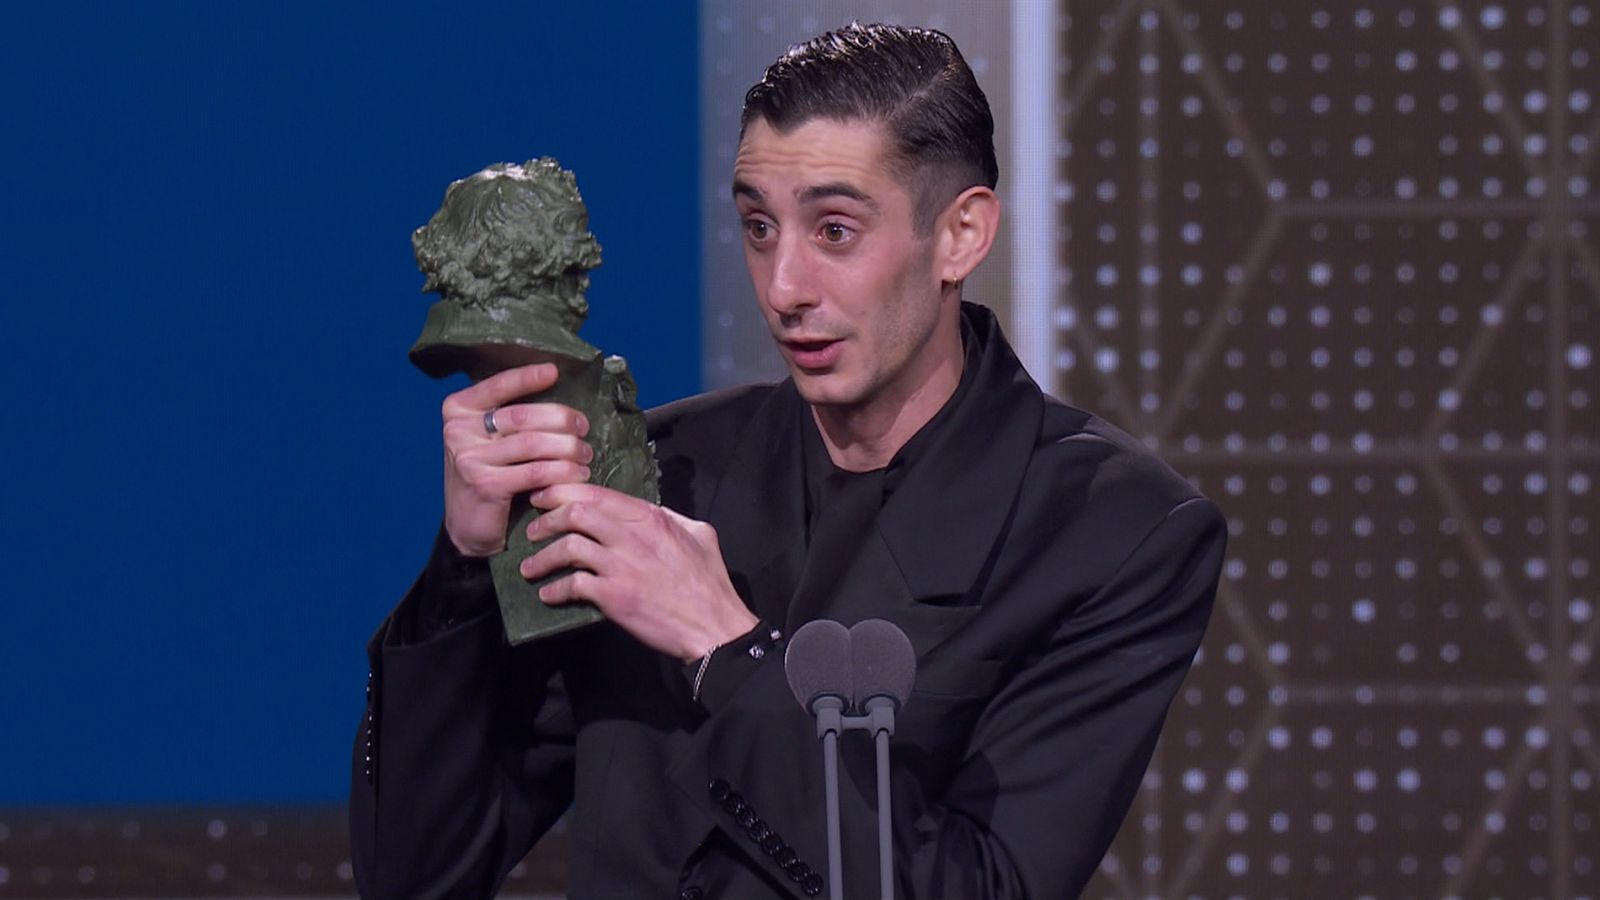 Premios Goya 2020: Enric Auquer, mejor actor revelación, por 'Quien a hierro mata' - RTVE.es